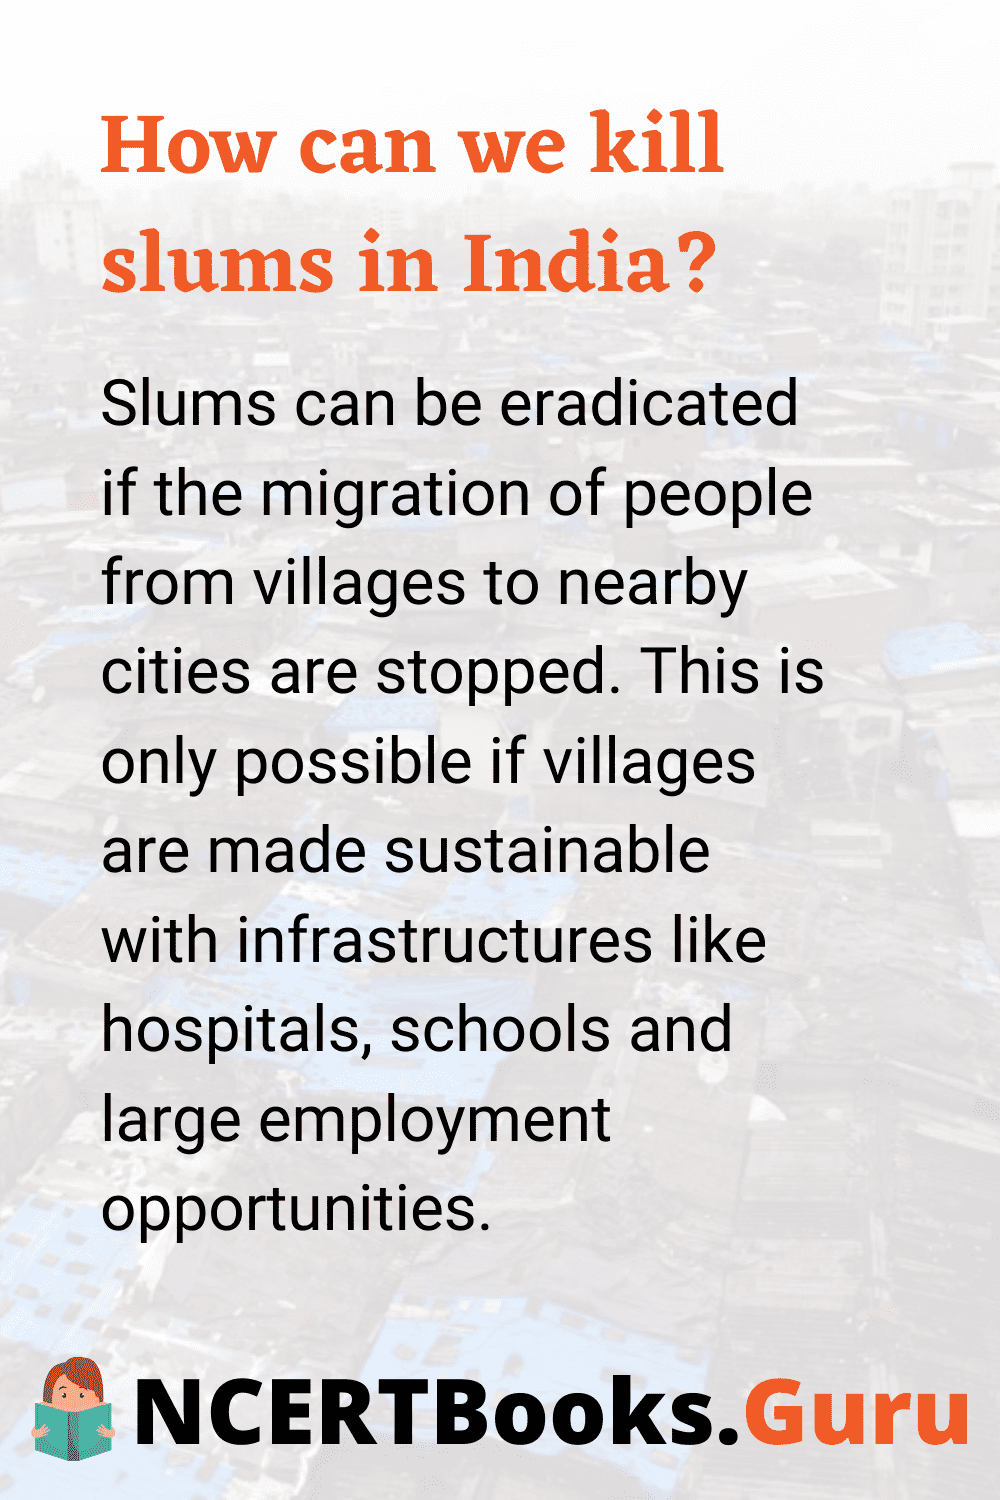 How to eradicate Slums in India